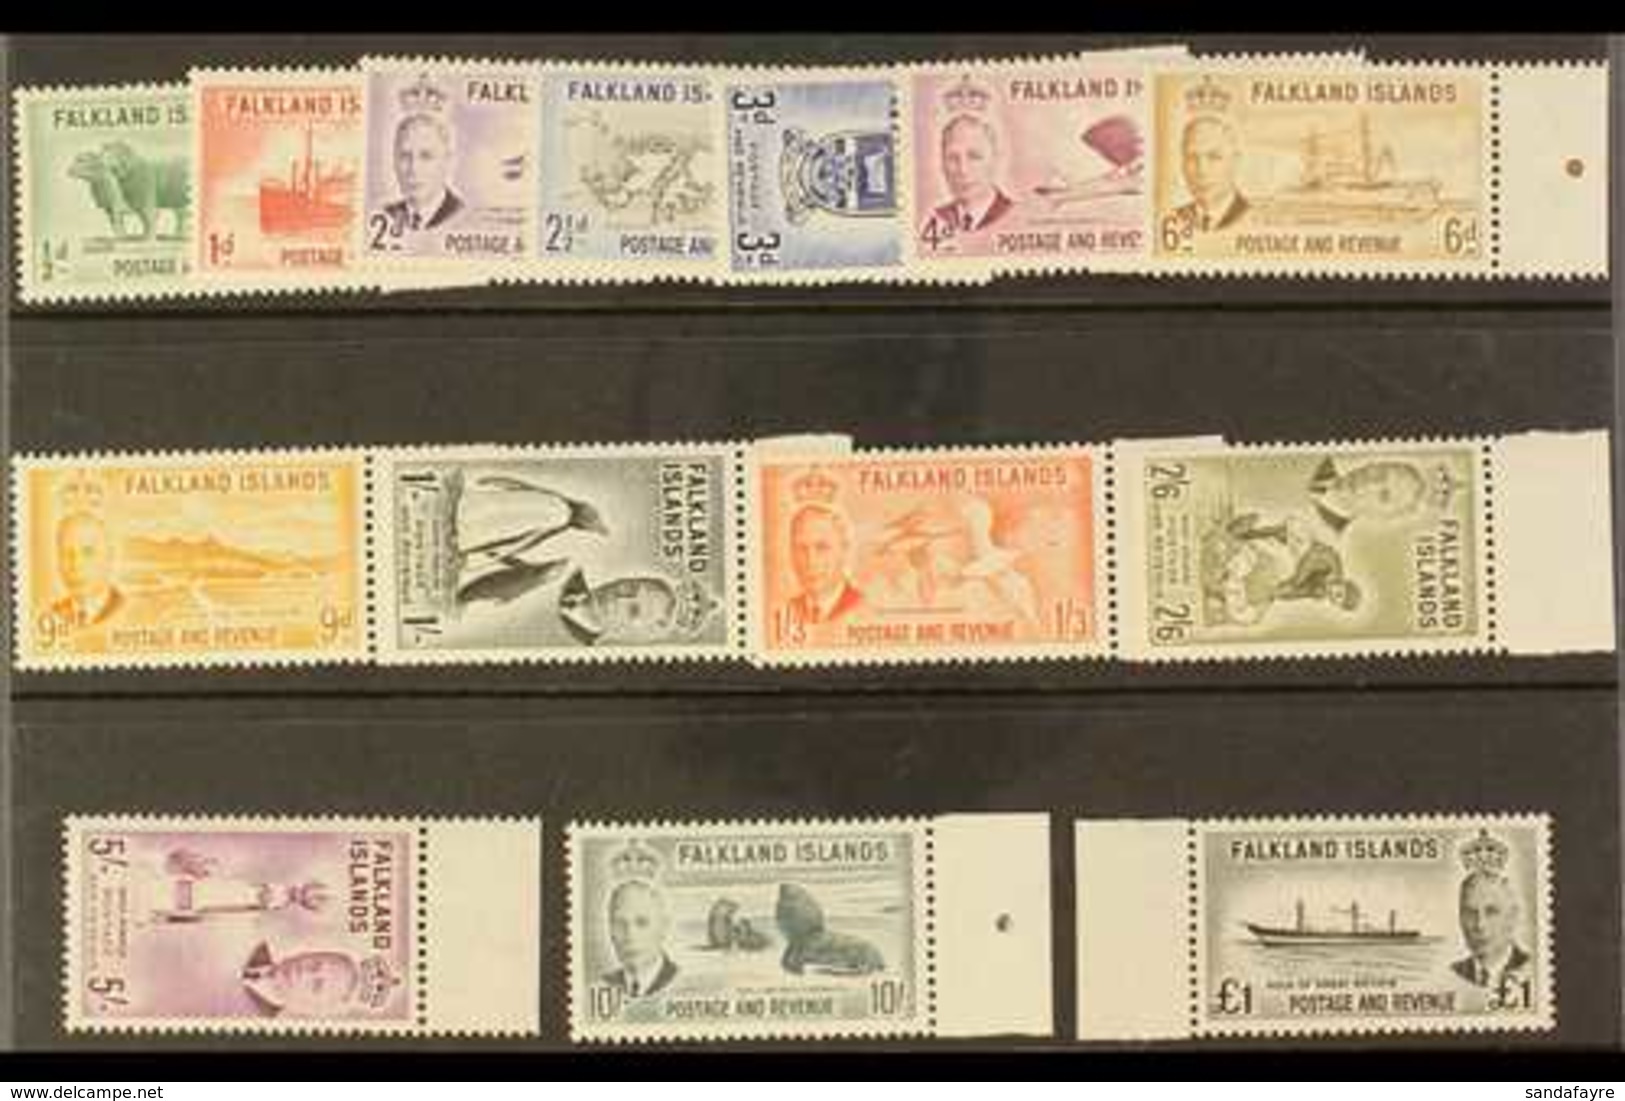 1952 MARGINAL SET. KGVI Definitives Complete Set, SG 172/85, Never Hinged Mint. (14 Stamps) For More Images, Please Visi - Falkland Islands